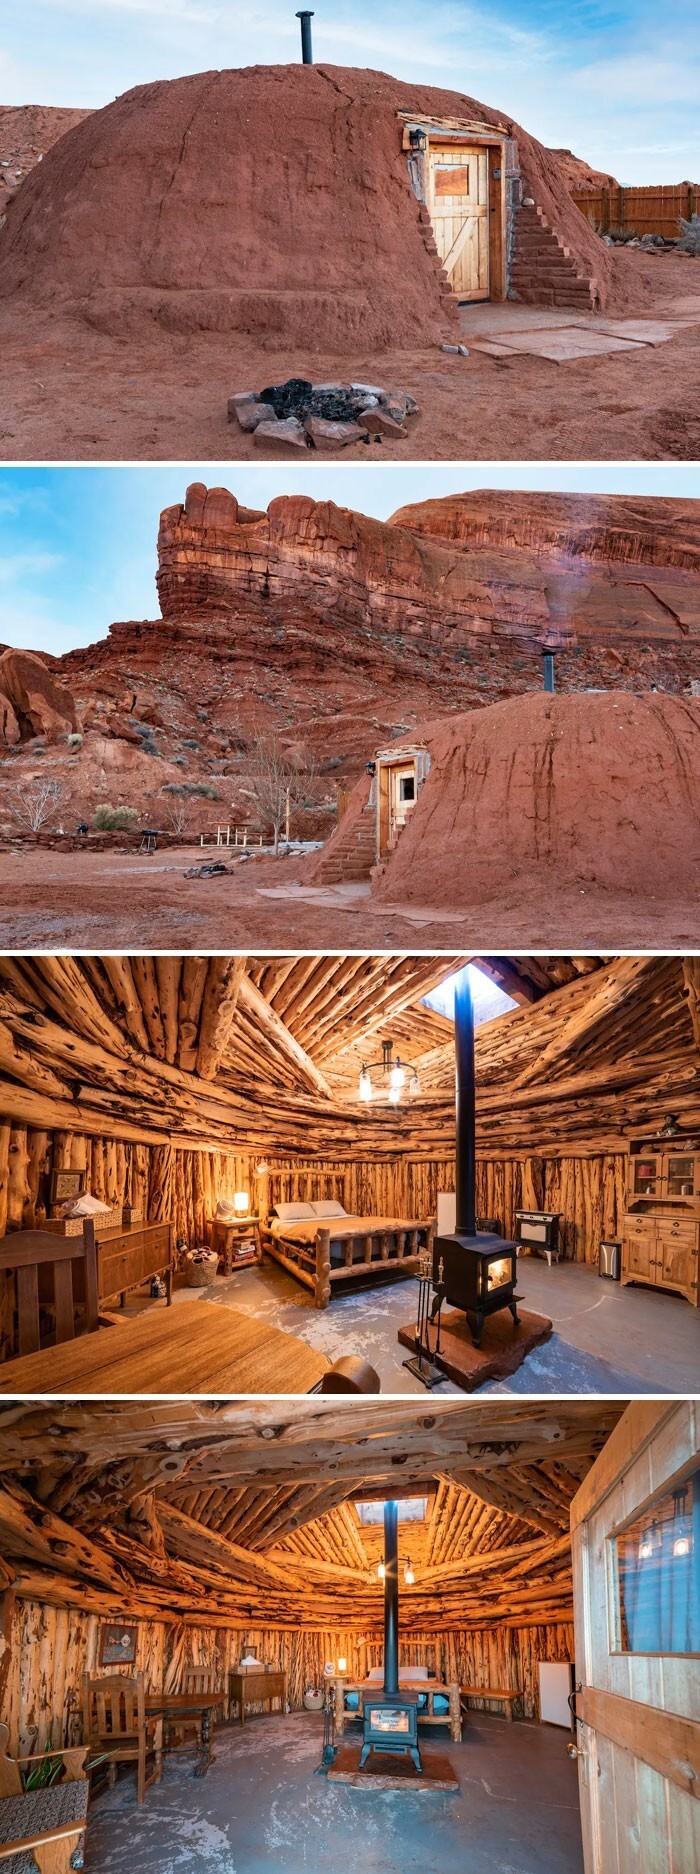 10. Традиционный дом навахо. Долина монументов, Юта, США